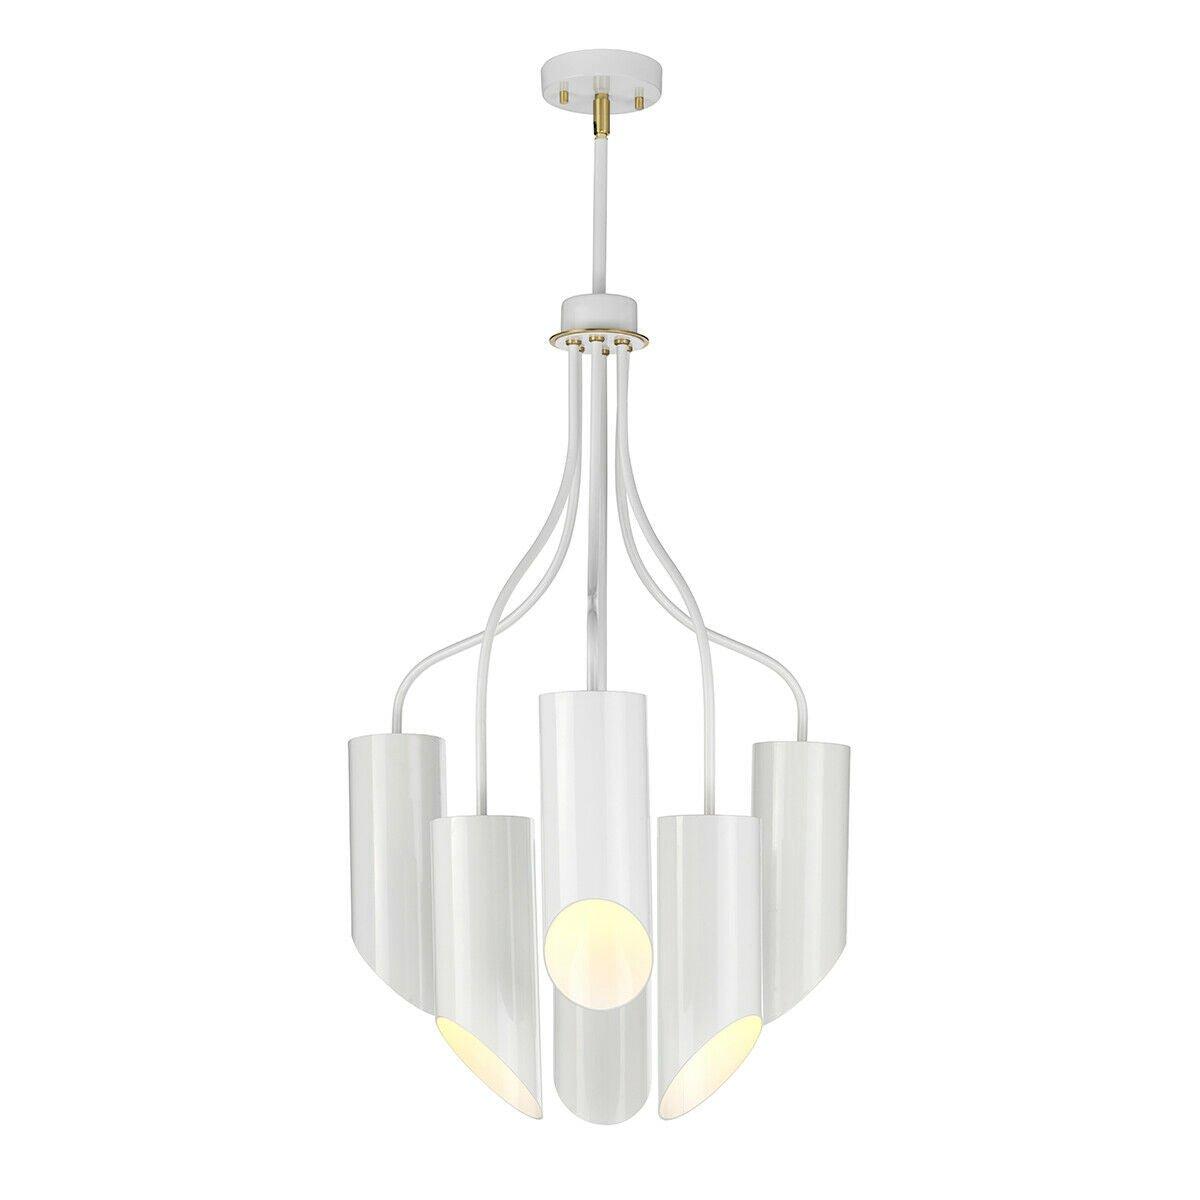 6 Bulb Chandelier Hanging Pendant Light White Aged Brass Finish LED E27 8W Bulb